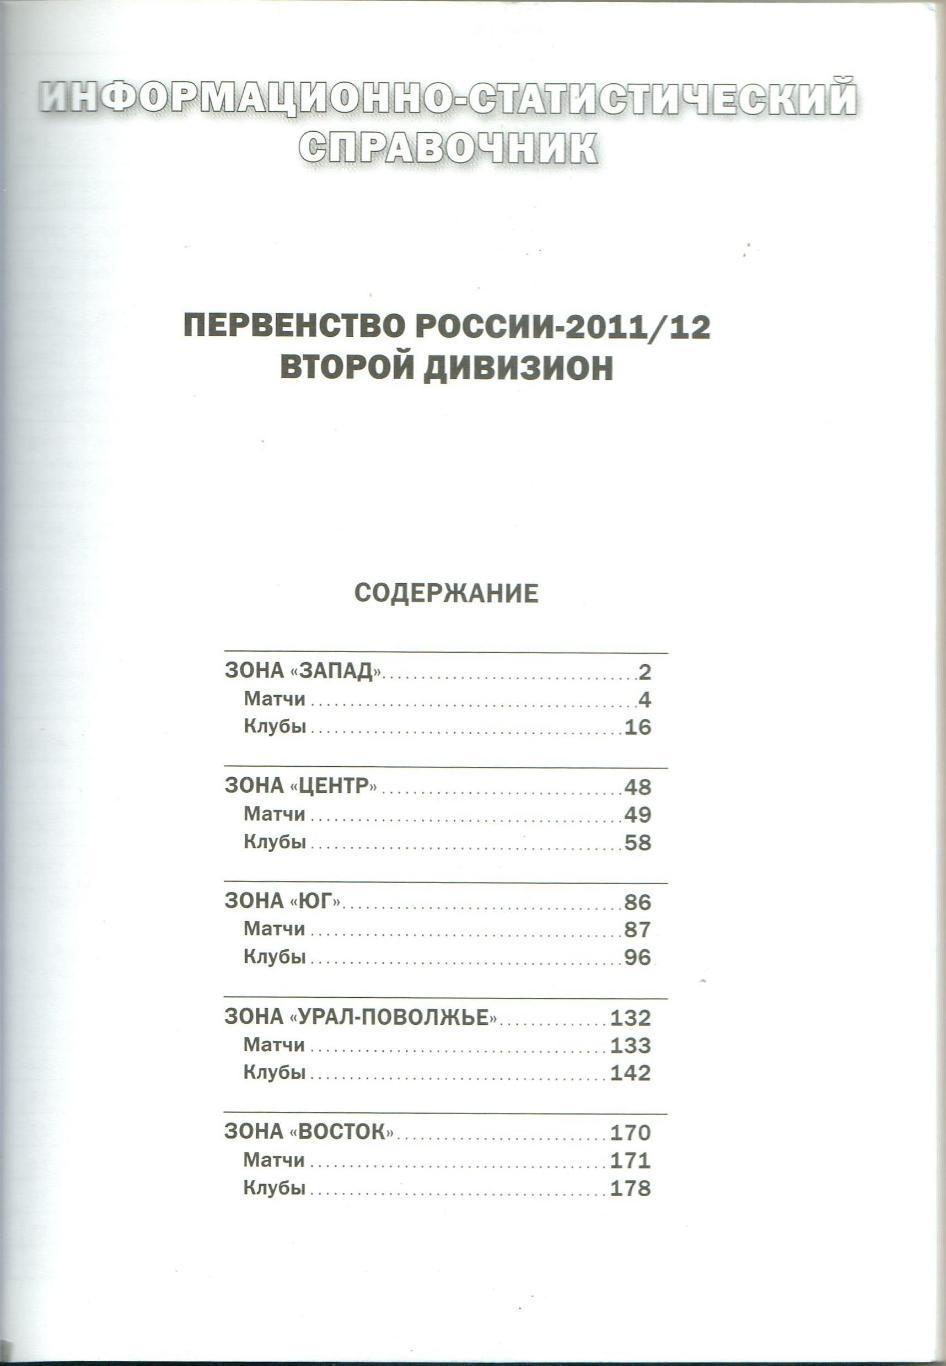 Статистический справочник РФС Итоги первенства России-2011/2012 Второй дивизион 1